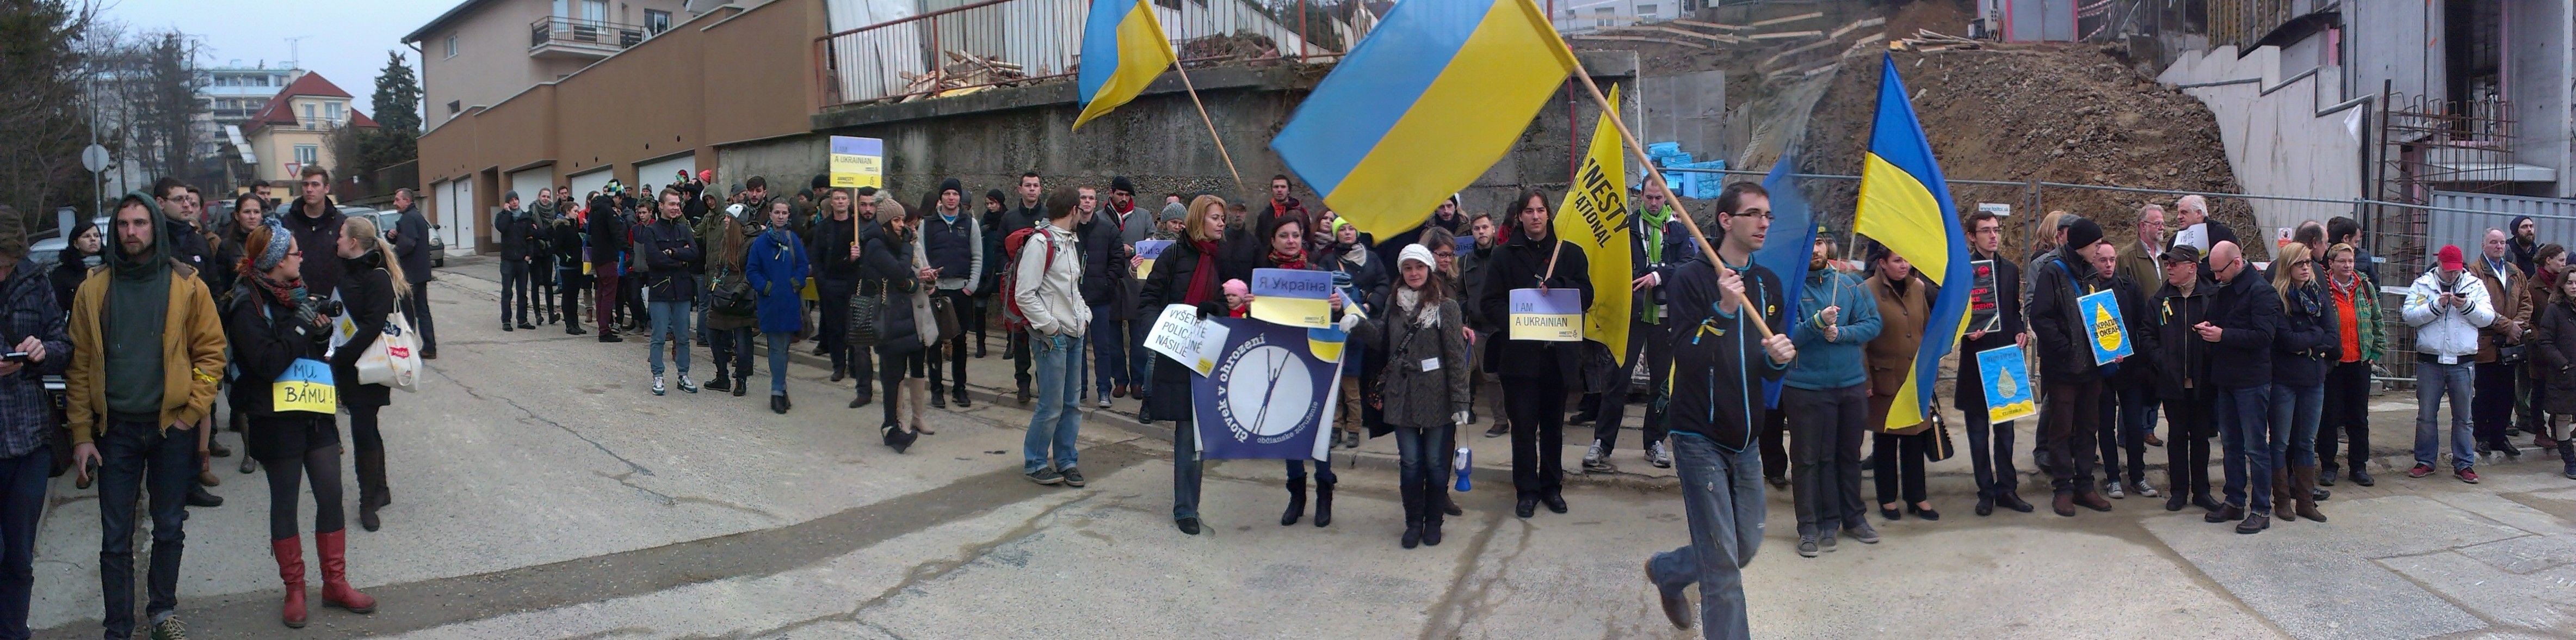 bratislava_protest_ukrajina_1.jpg